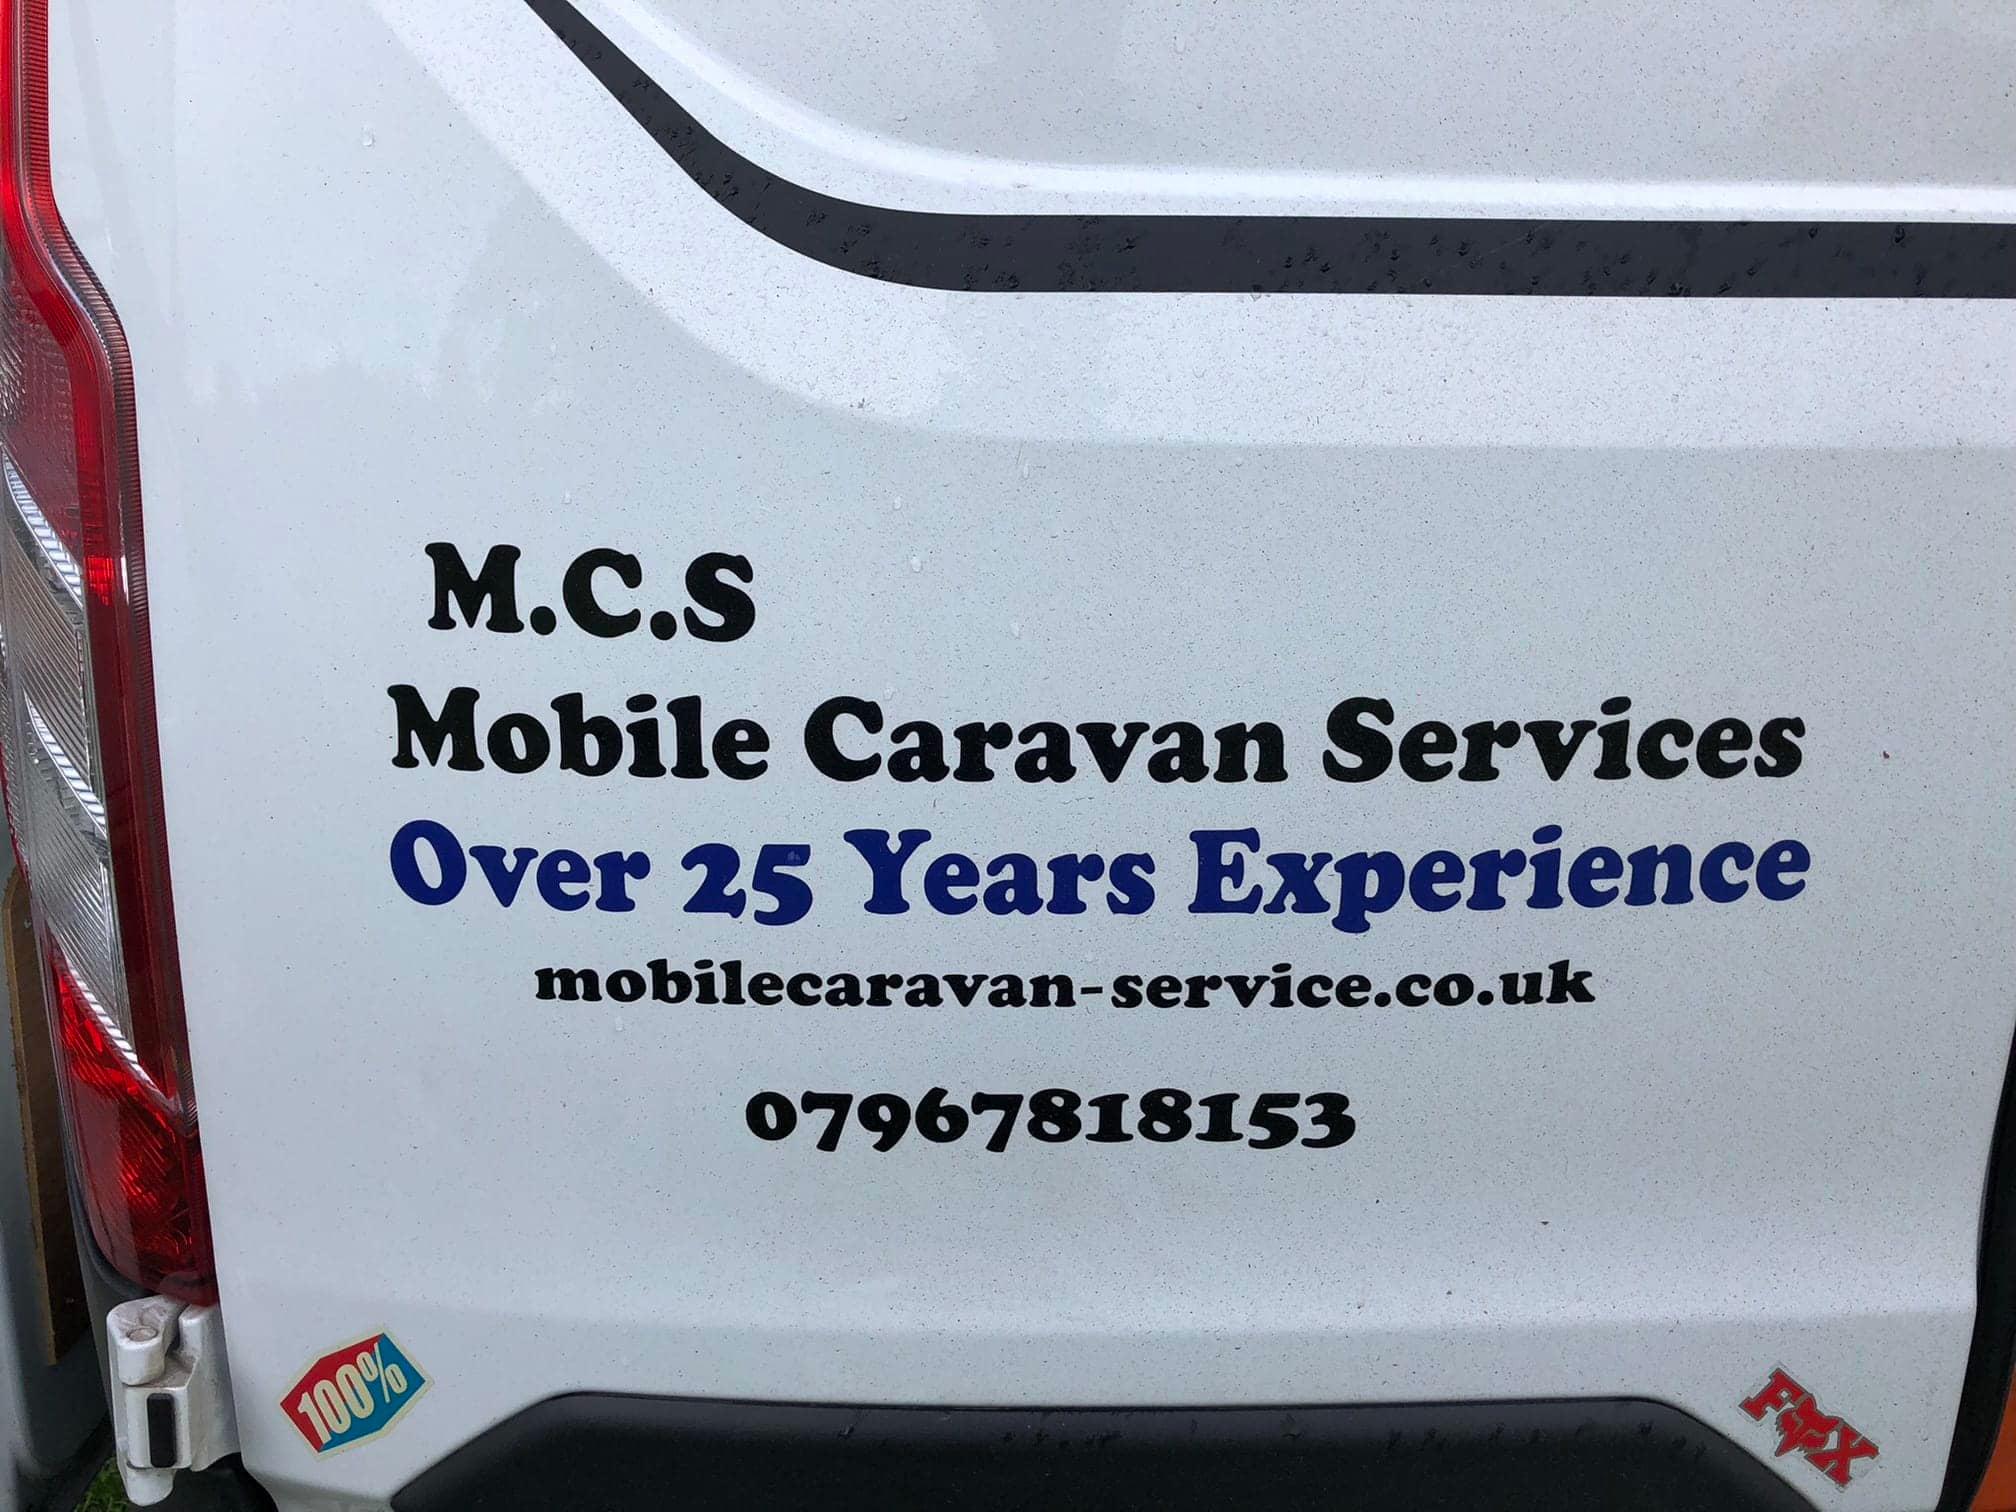 M.C.S Mobile Caravan Services Coventry 07967 818153